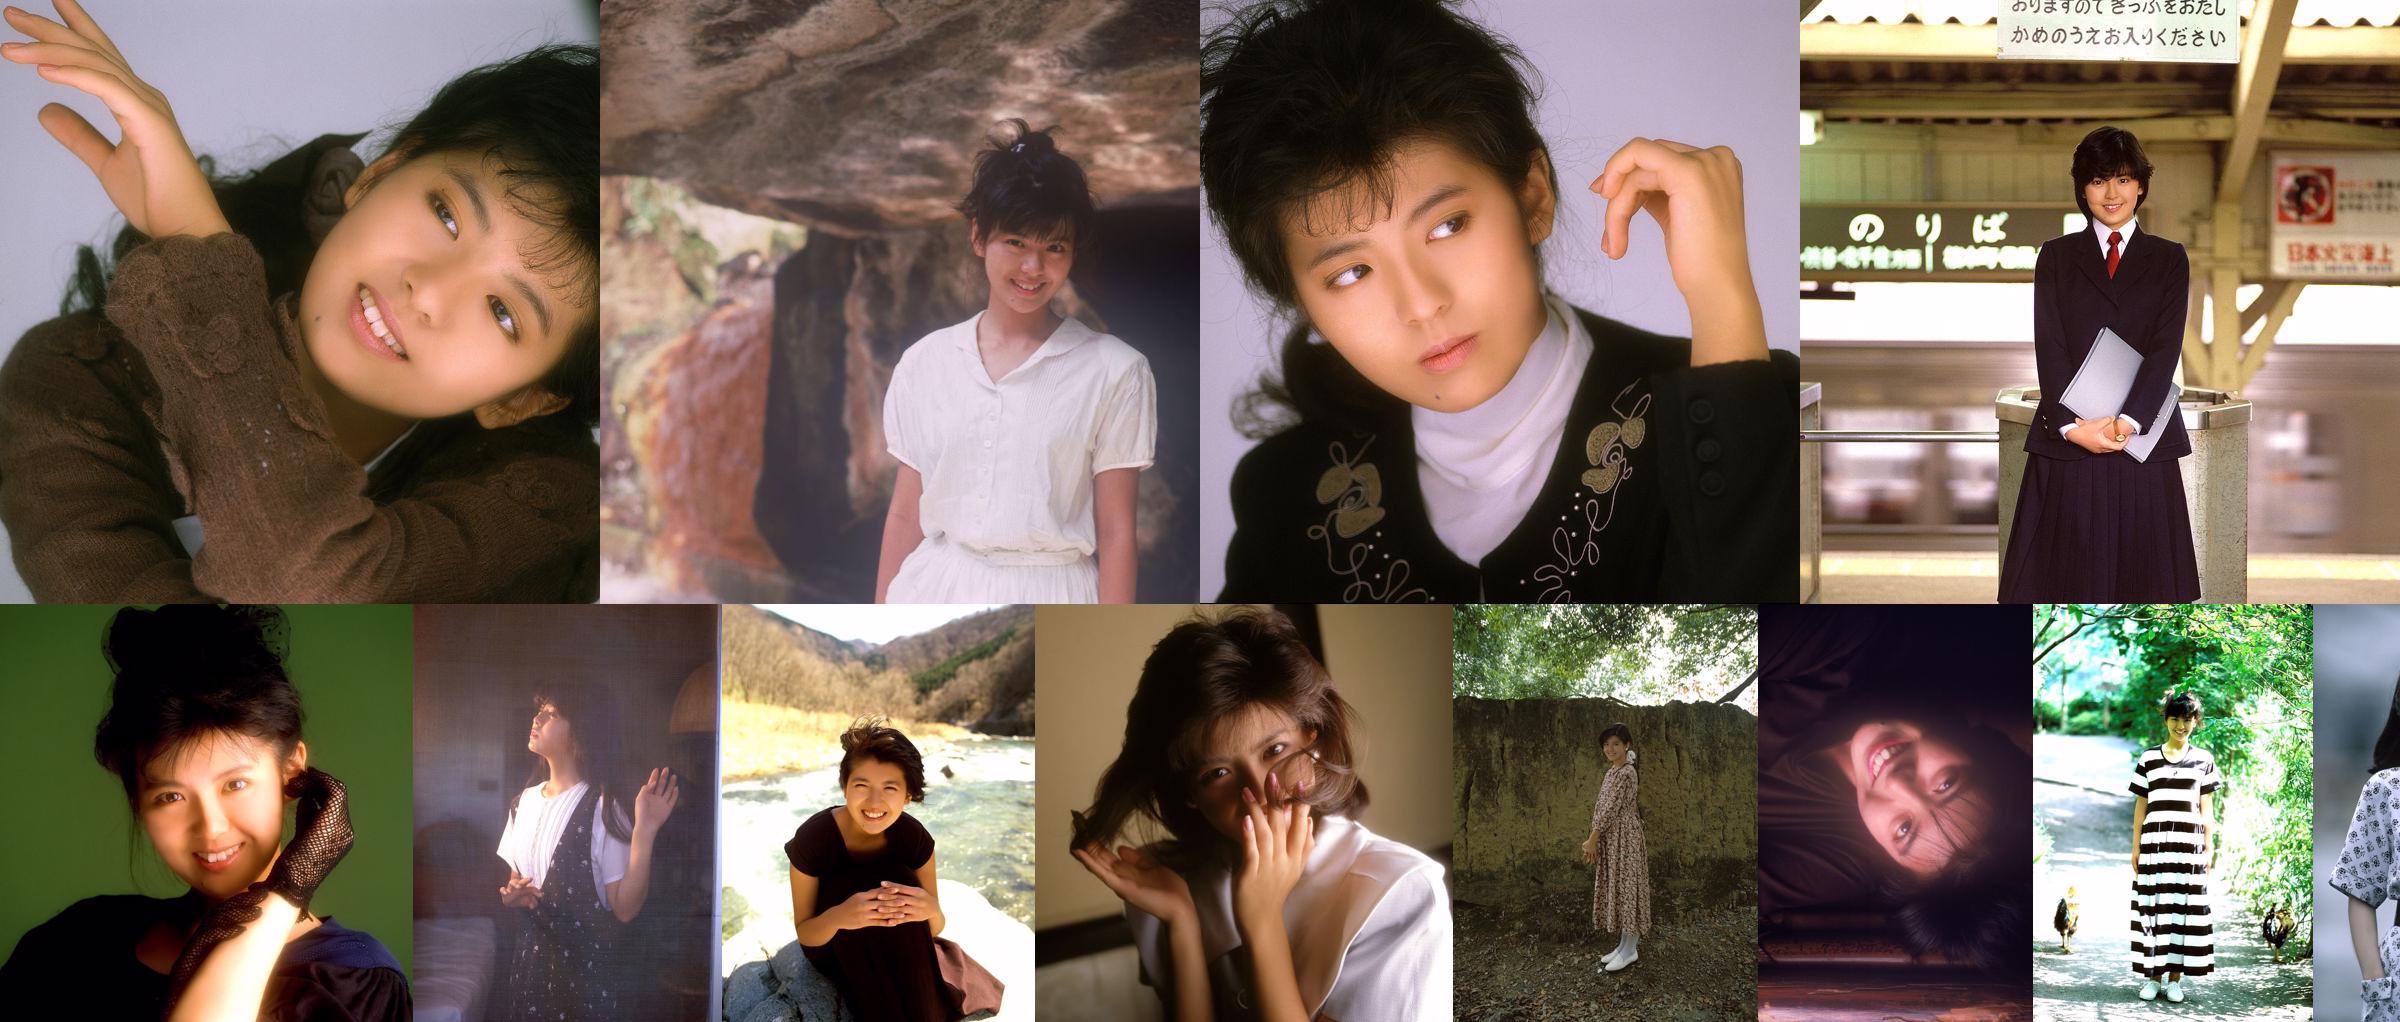 [NS Eyes] SF-No.212 Yoko Minamino Yoko Minamino No.0c9ee1 Page 1